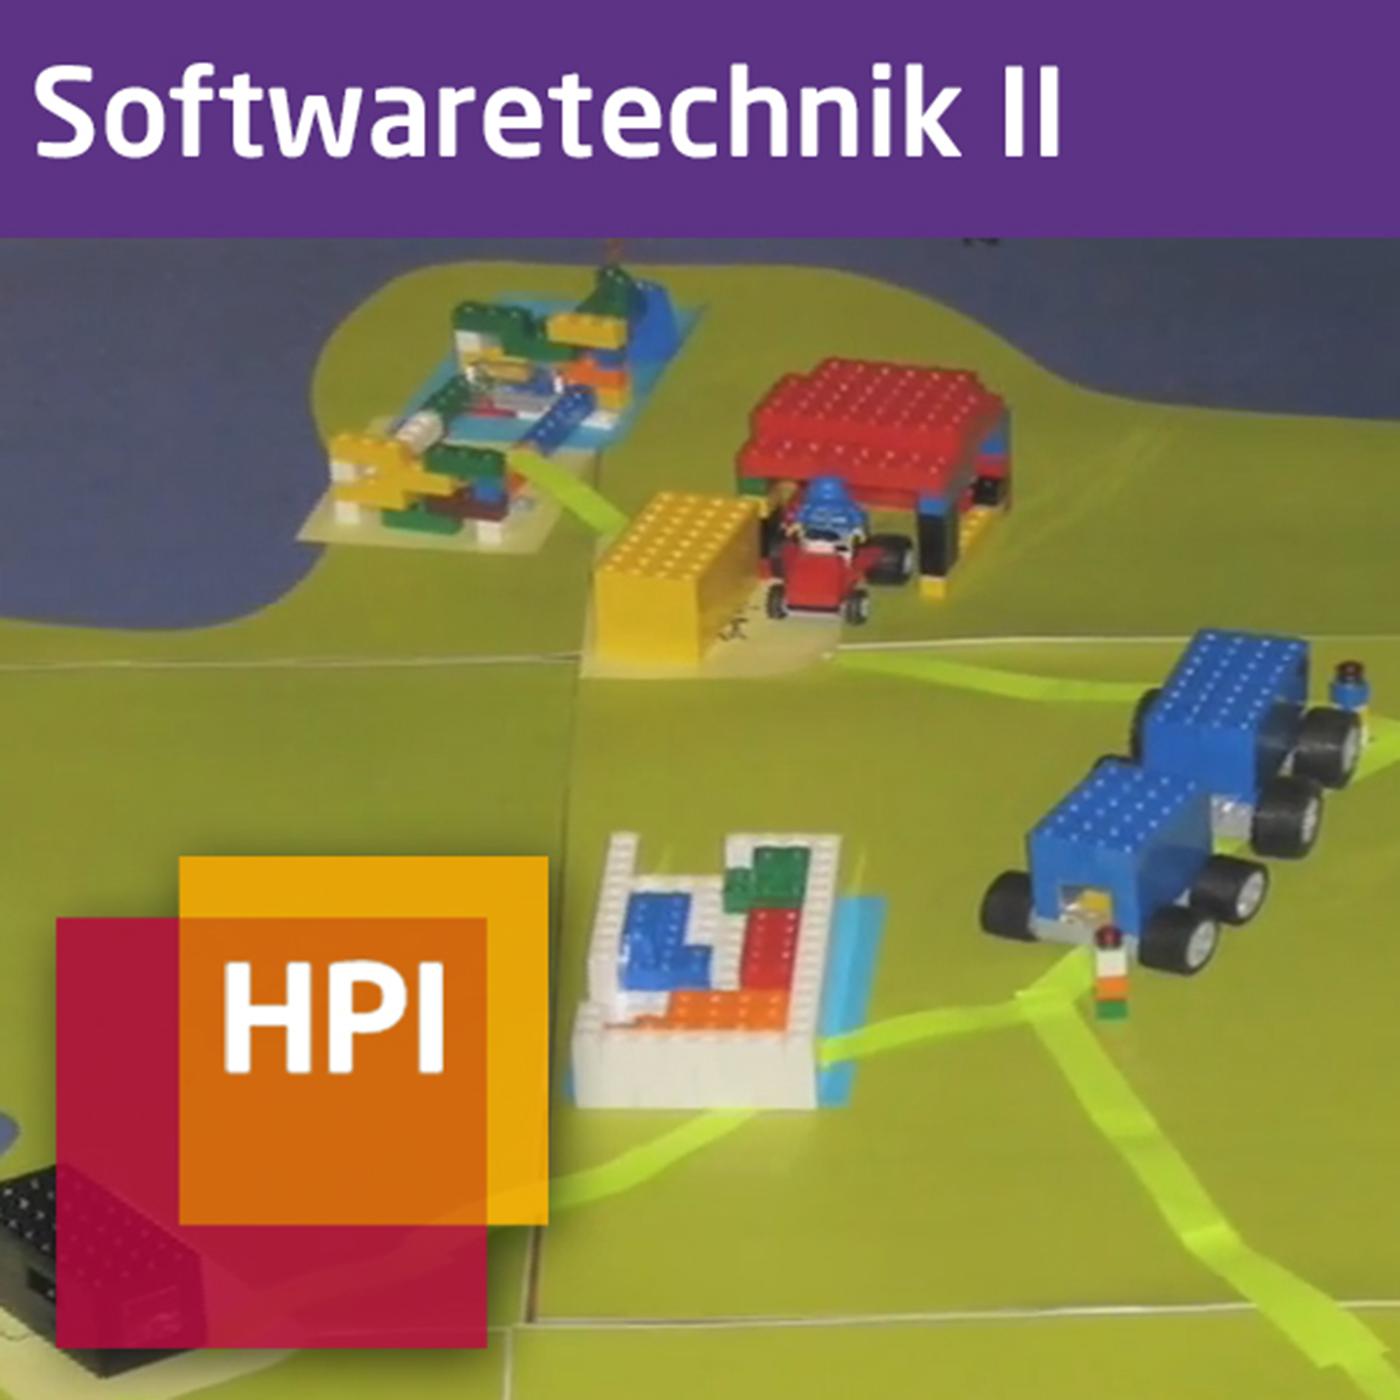 Softwaretechnik II (WS 2015/16) - tele-TASK